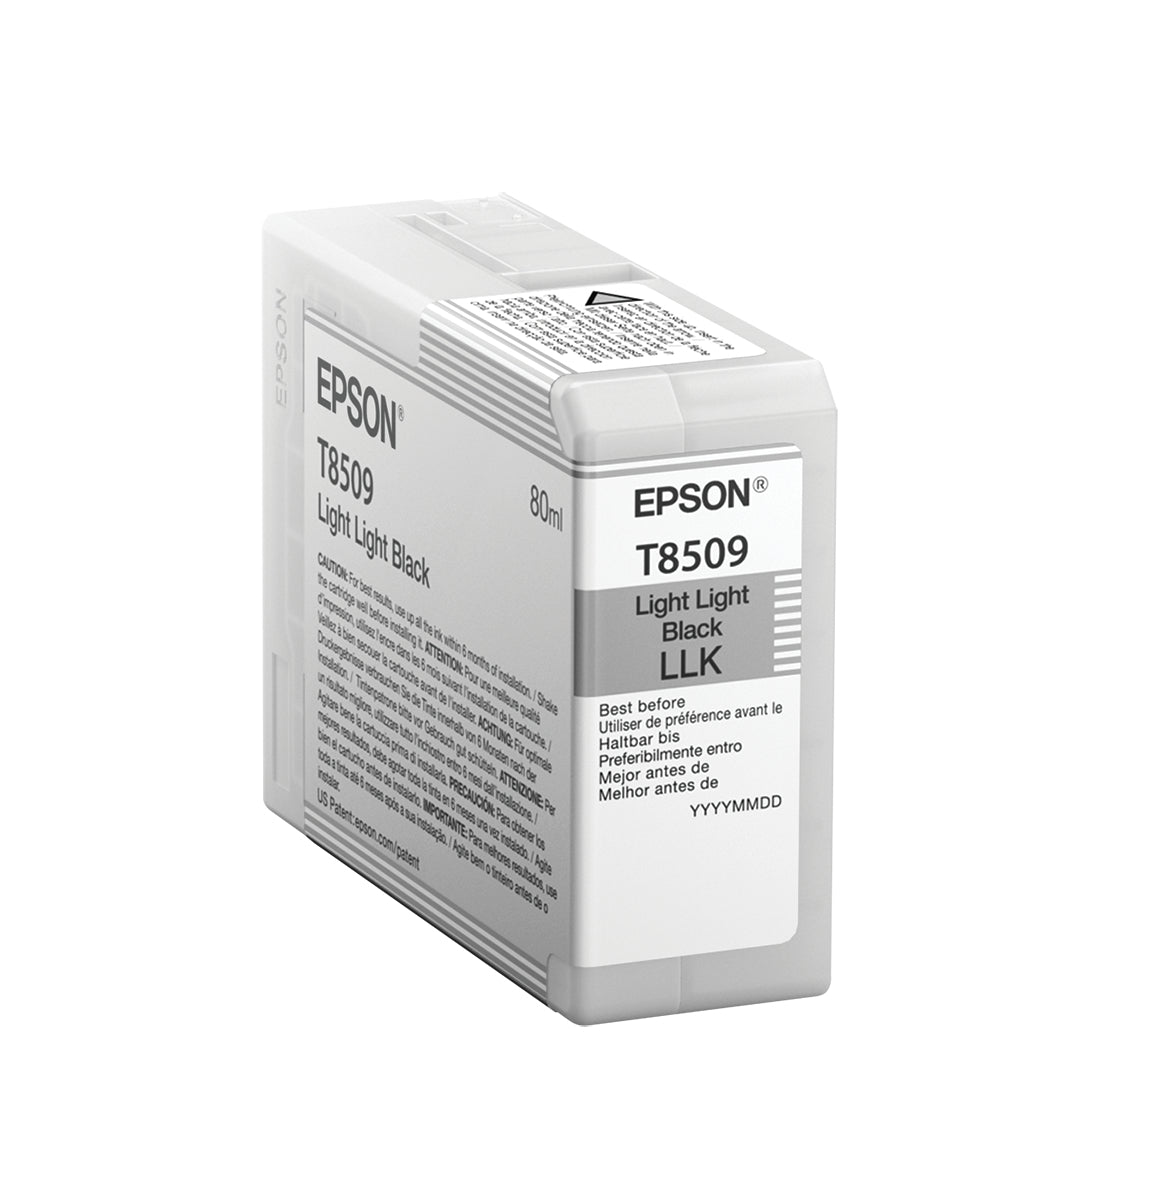 Epson C13T850900/T8509 Ink cartridge light light black 80ml for Epson SC-P 800